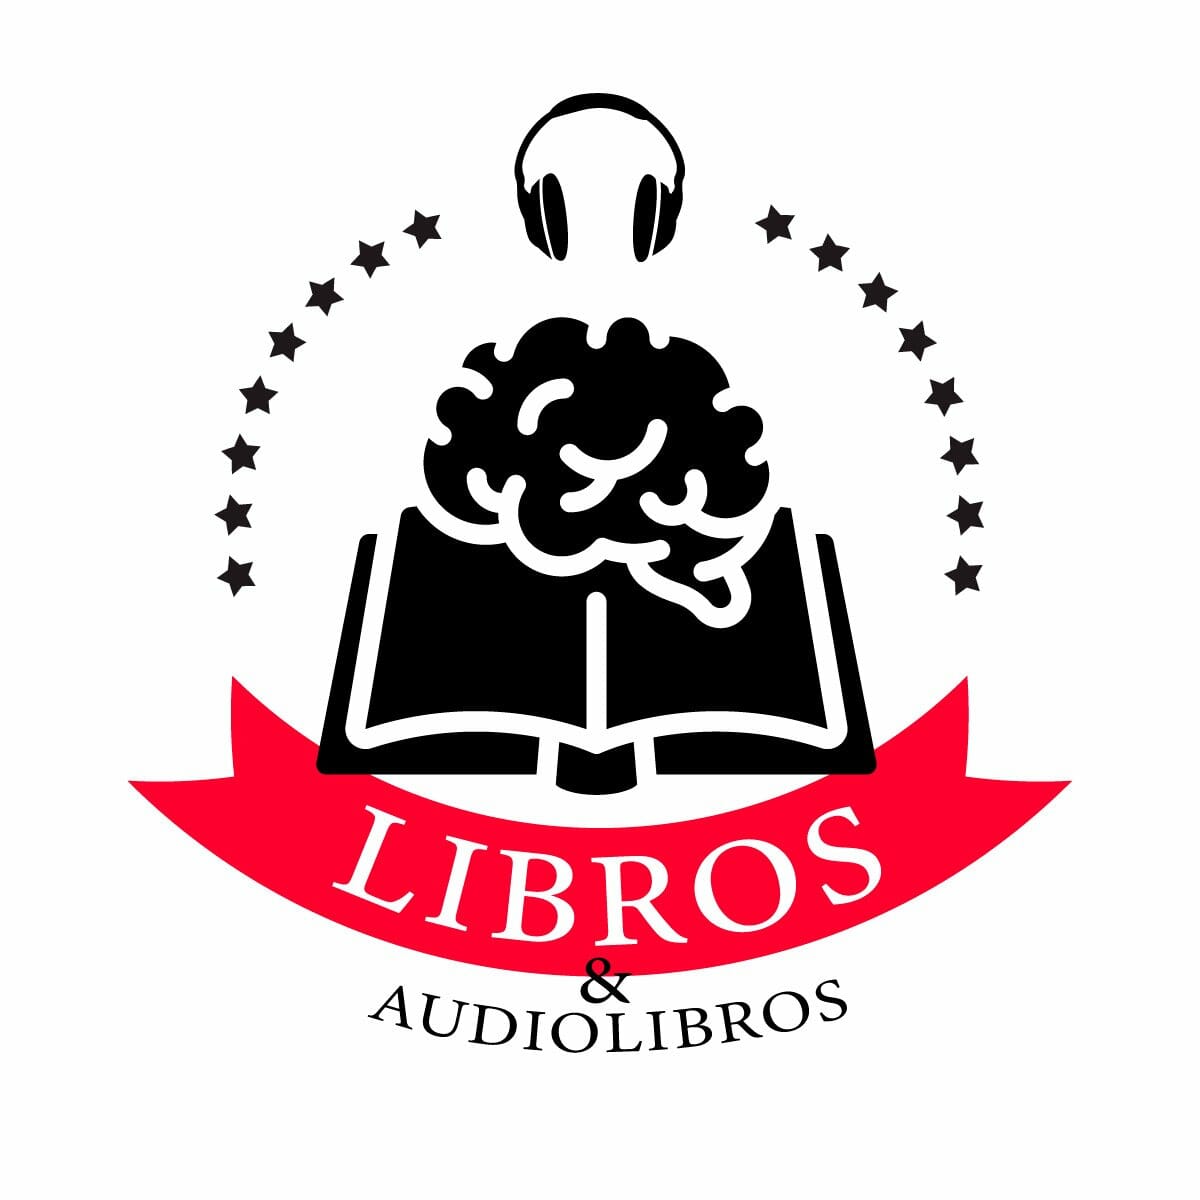 Libros-y-audiolibros-oficial